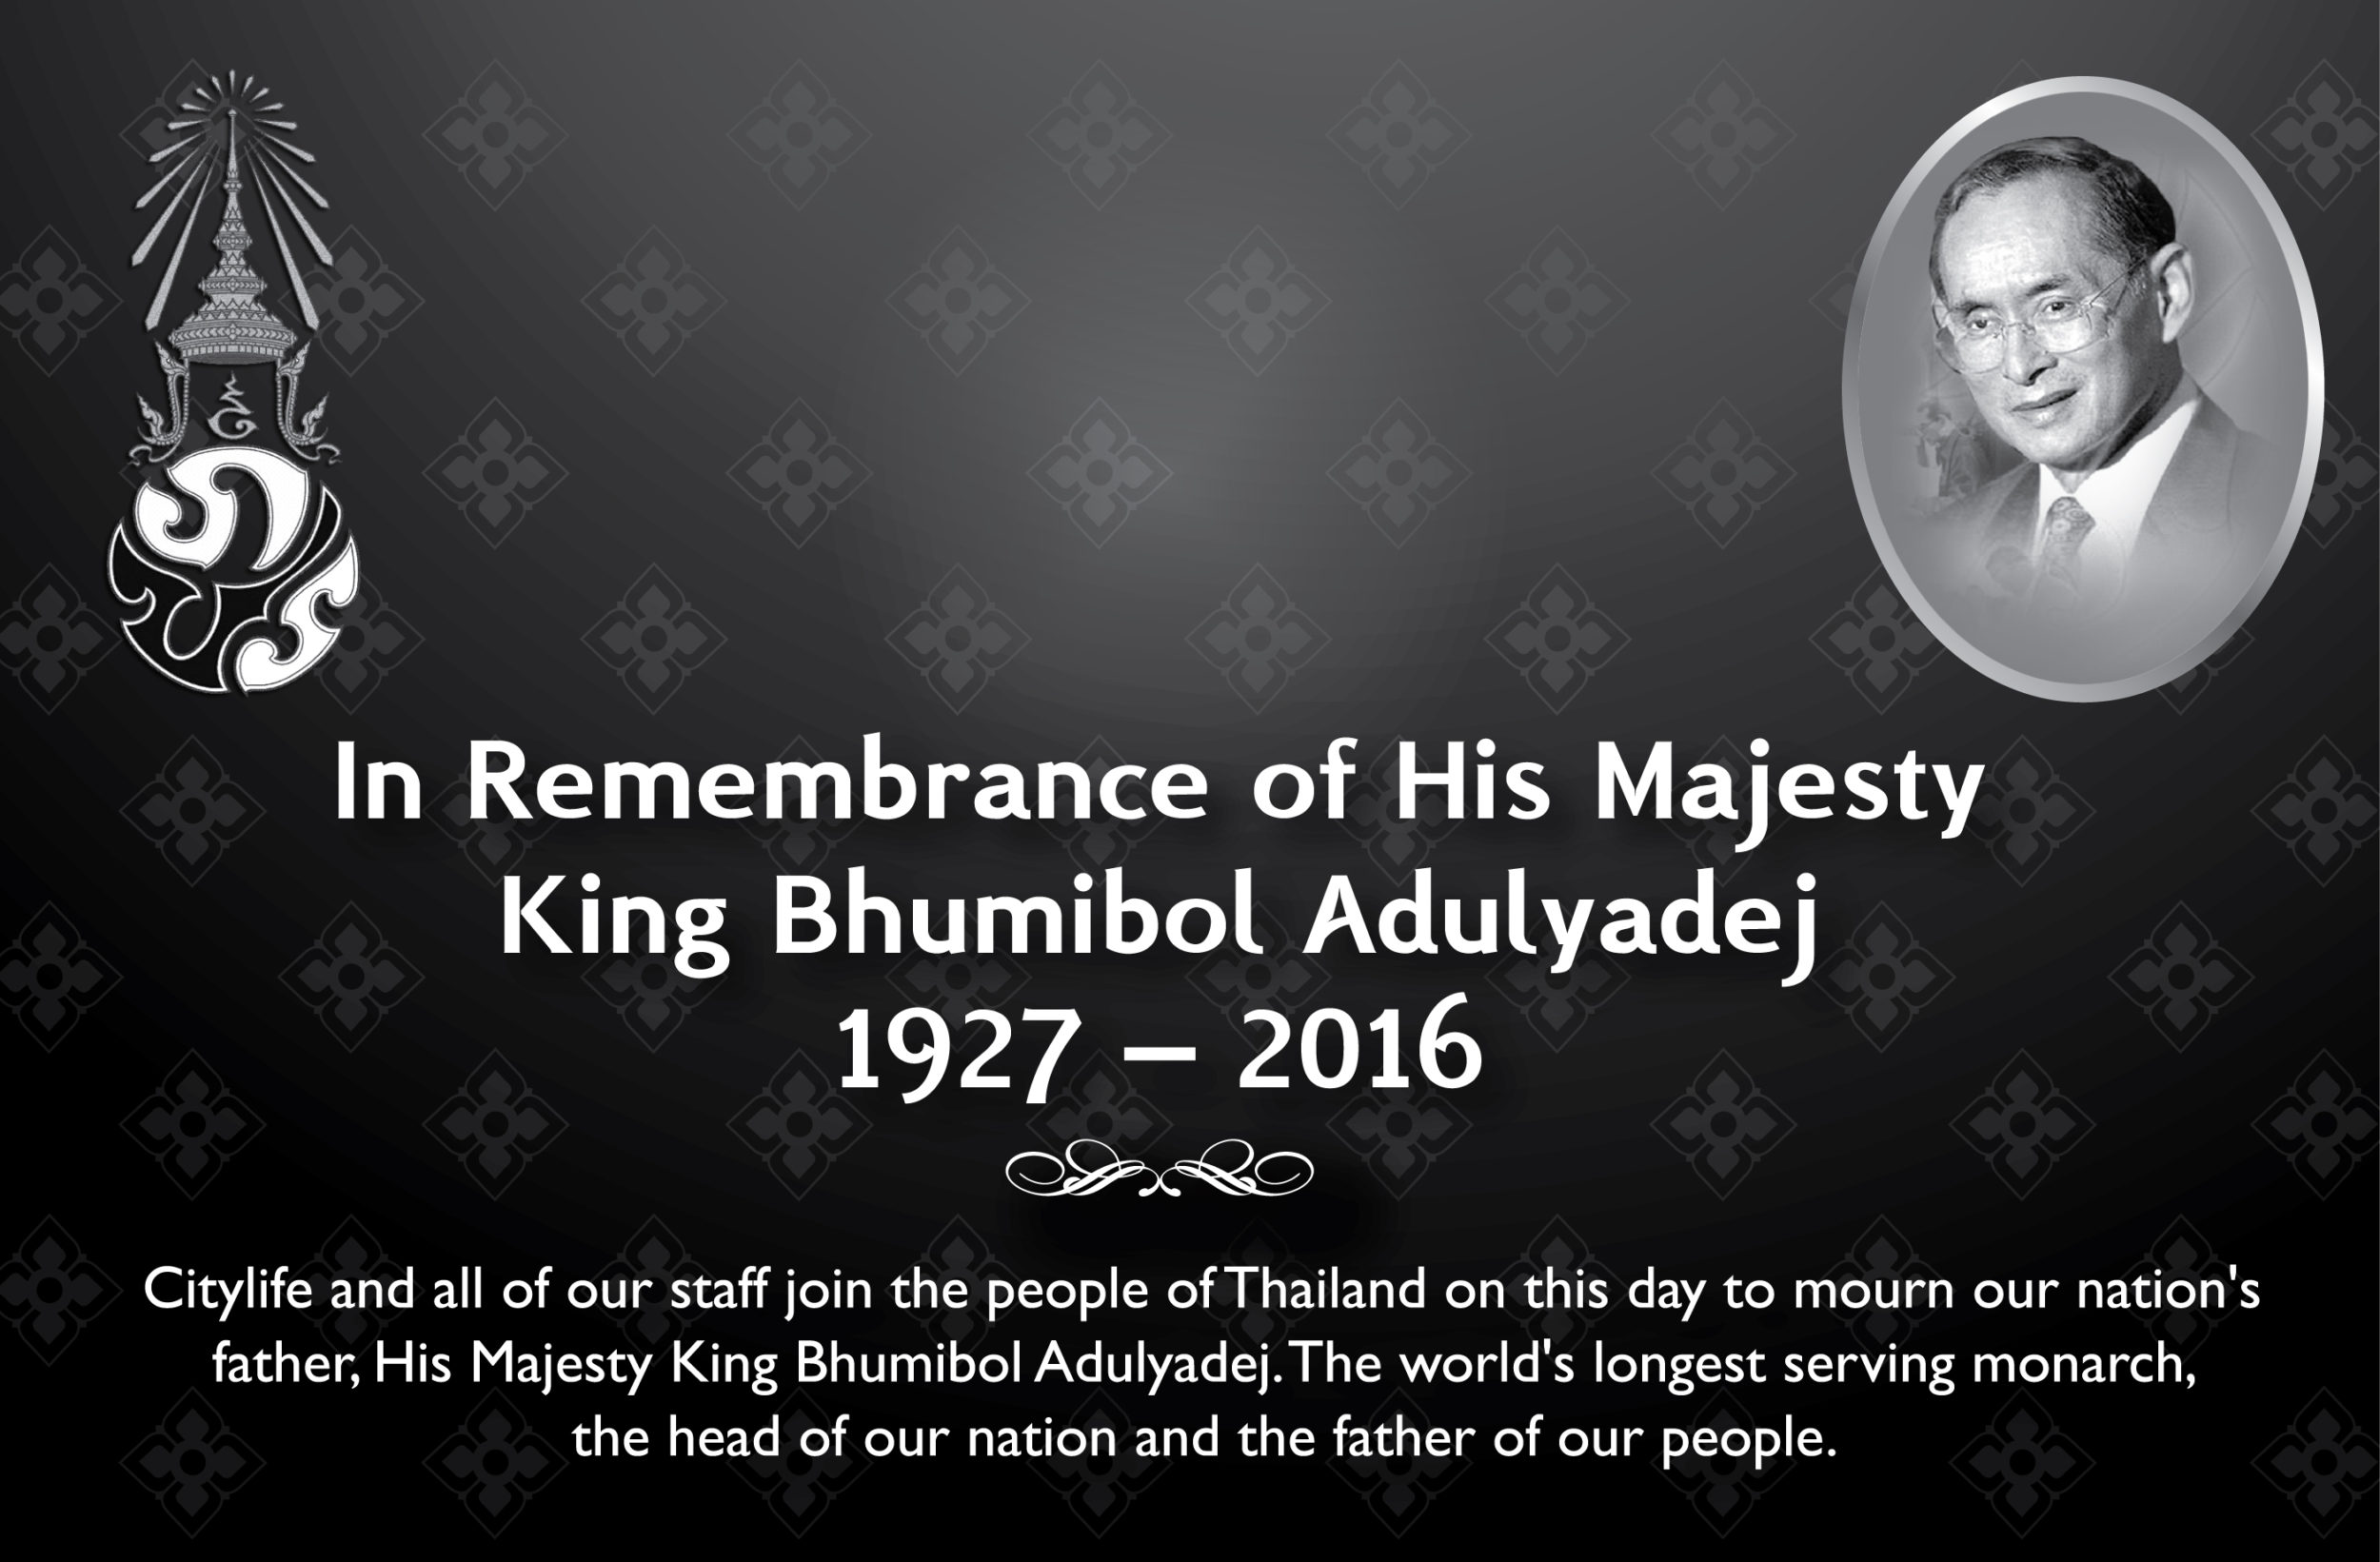 King Bhumibol